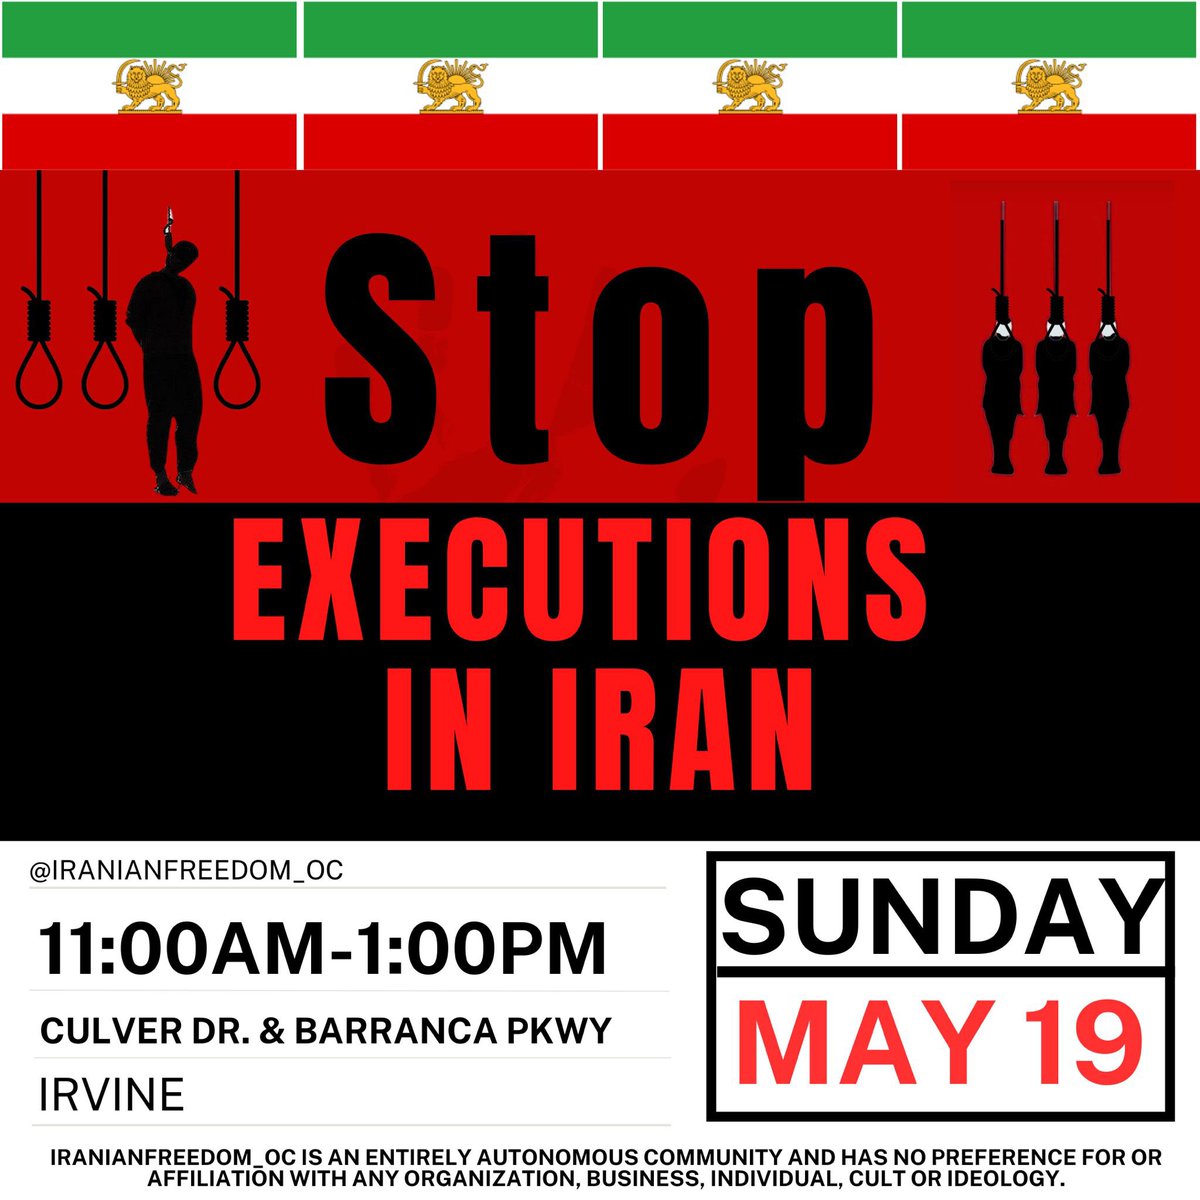 تظاهرات یکشنبه ایرواین کالیفرنیا
#زن_زندگی_آزادی 
#IRGCterorrists